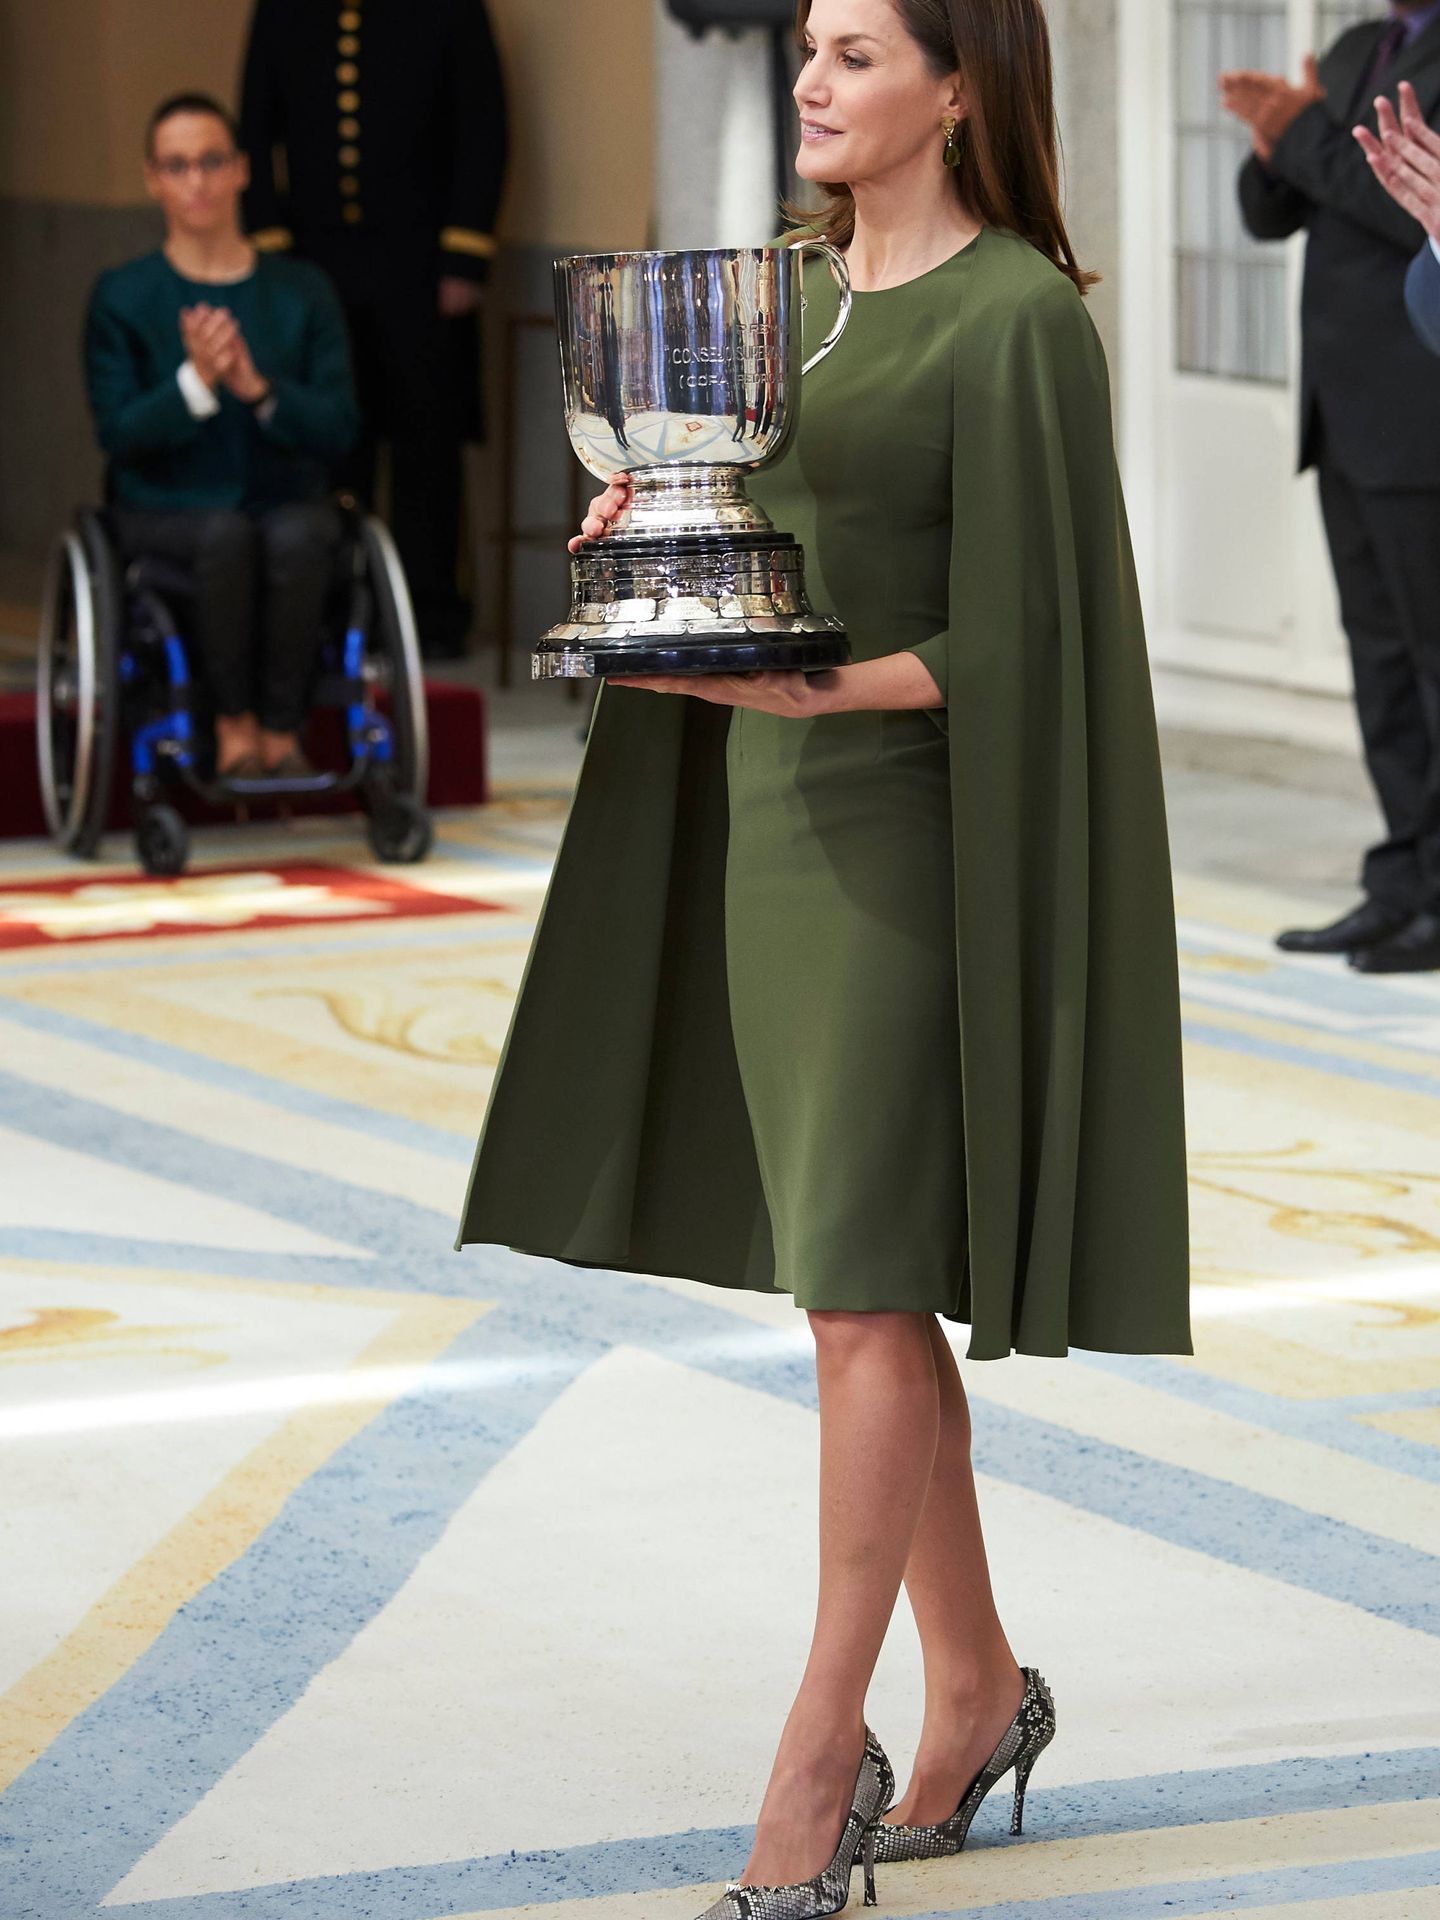  La Reina entregando uno de los premios. (Limited Pictures)